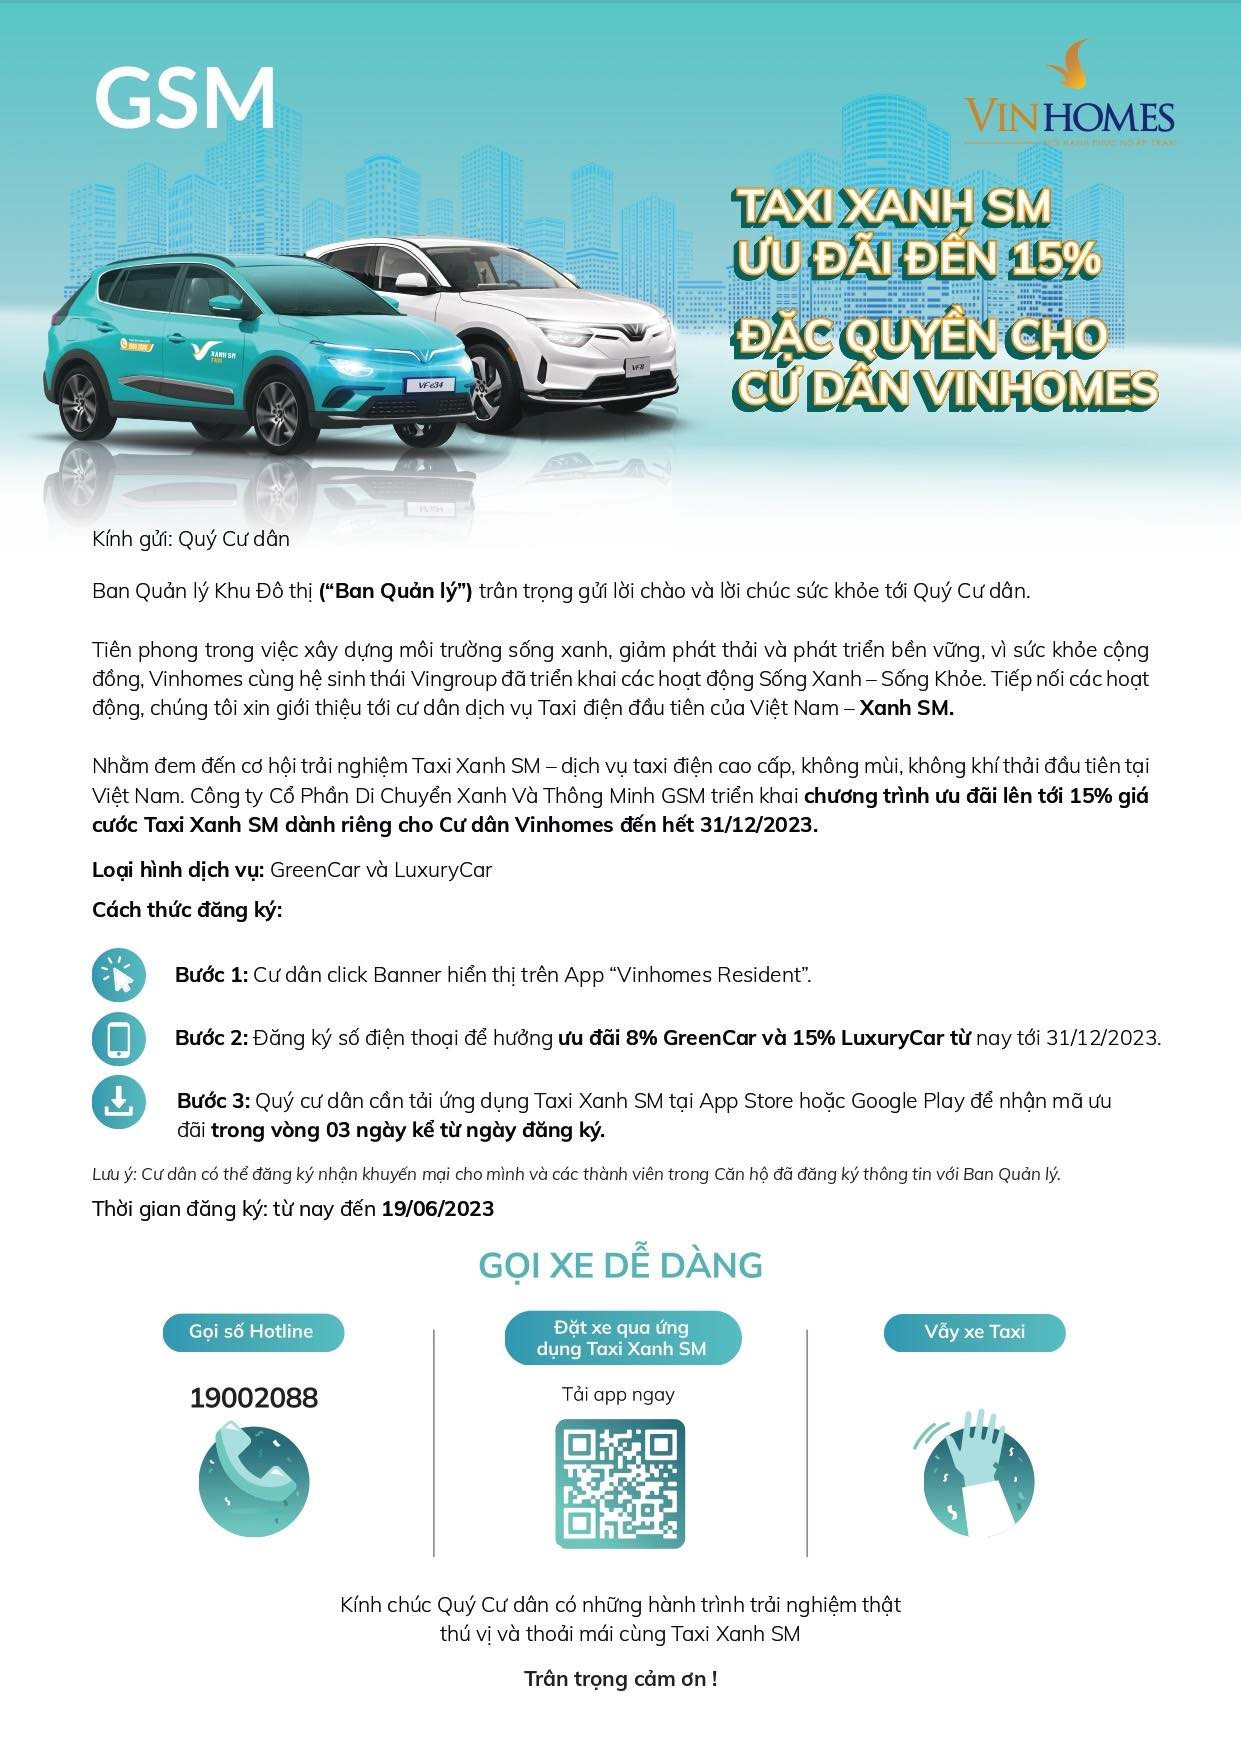 Taxi điện GSM mạnh tay ưu đãi 15% giá cước, đặc quyền chỉ dành riêng cho cư dân tại Vinhomes - Ảnh 2.